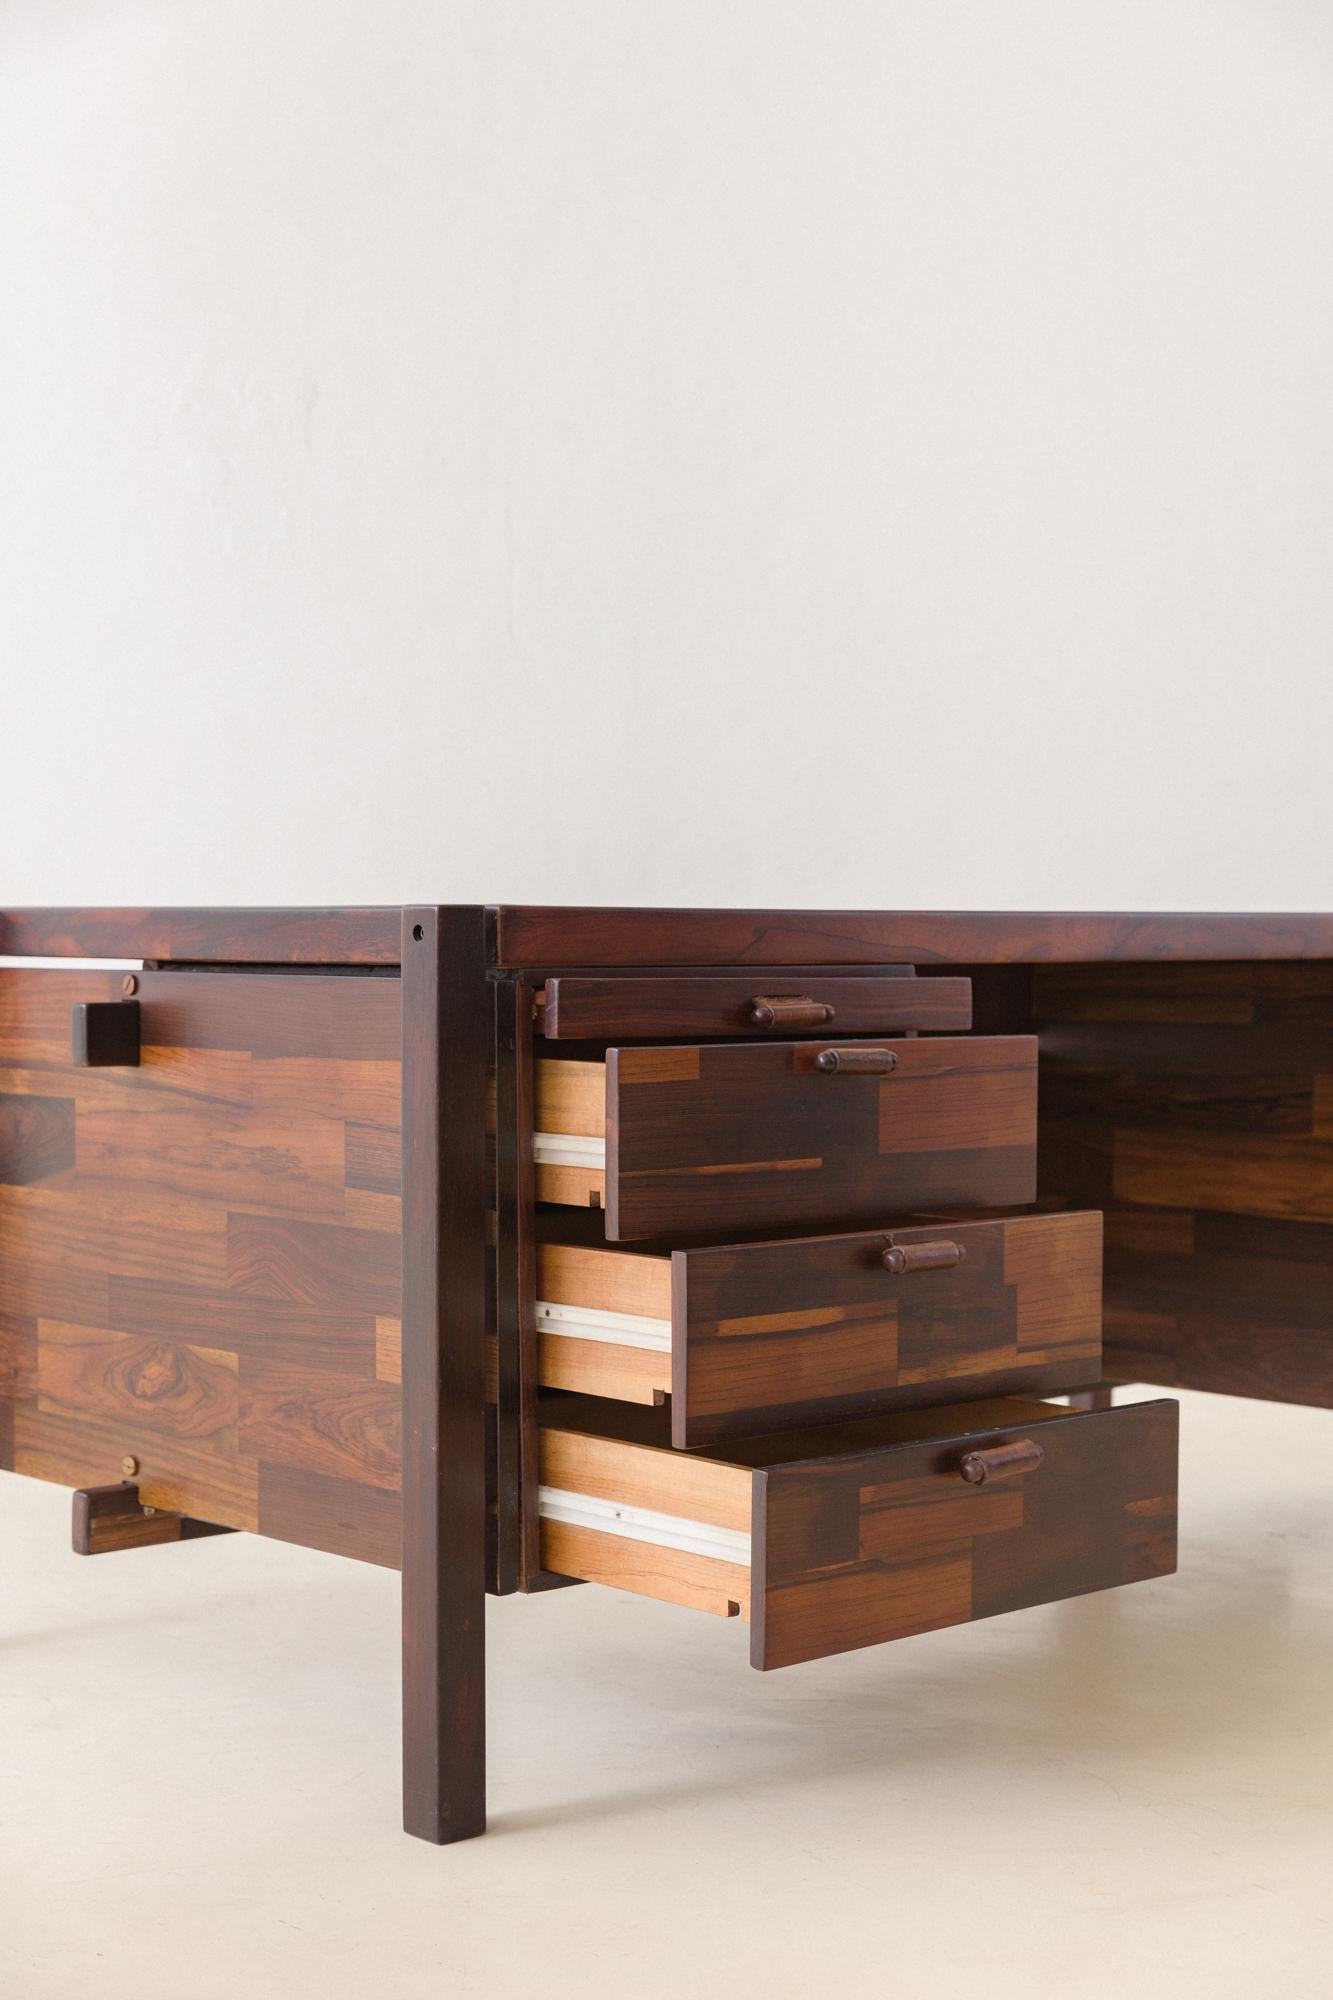 Rosewood Desk by Jorge Zalszupin, L'Atelier, 1960s, Brazilian Midcentury Modern 2